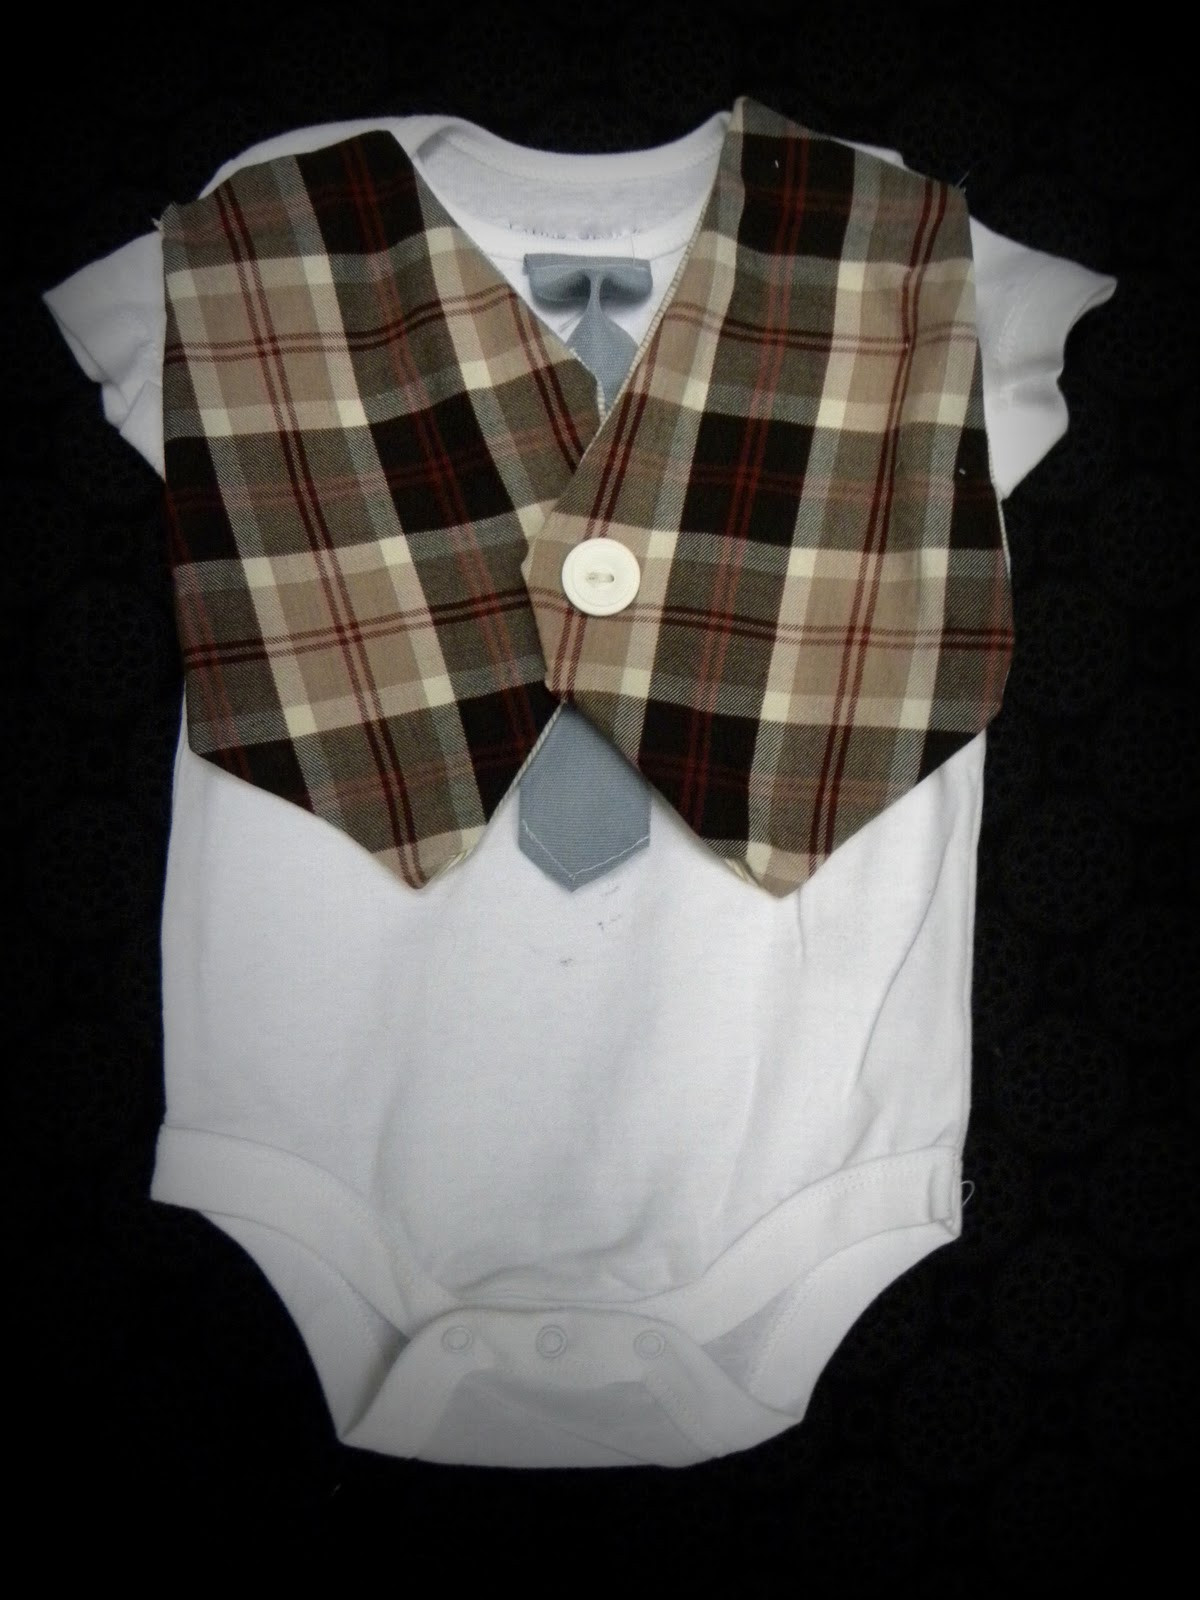 Diy Baby Onesies
 Crafting Made Simple DIY baby onesie vest